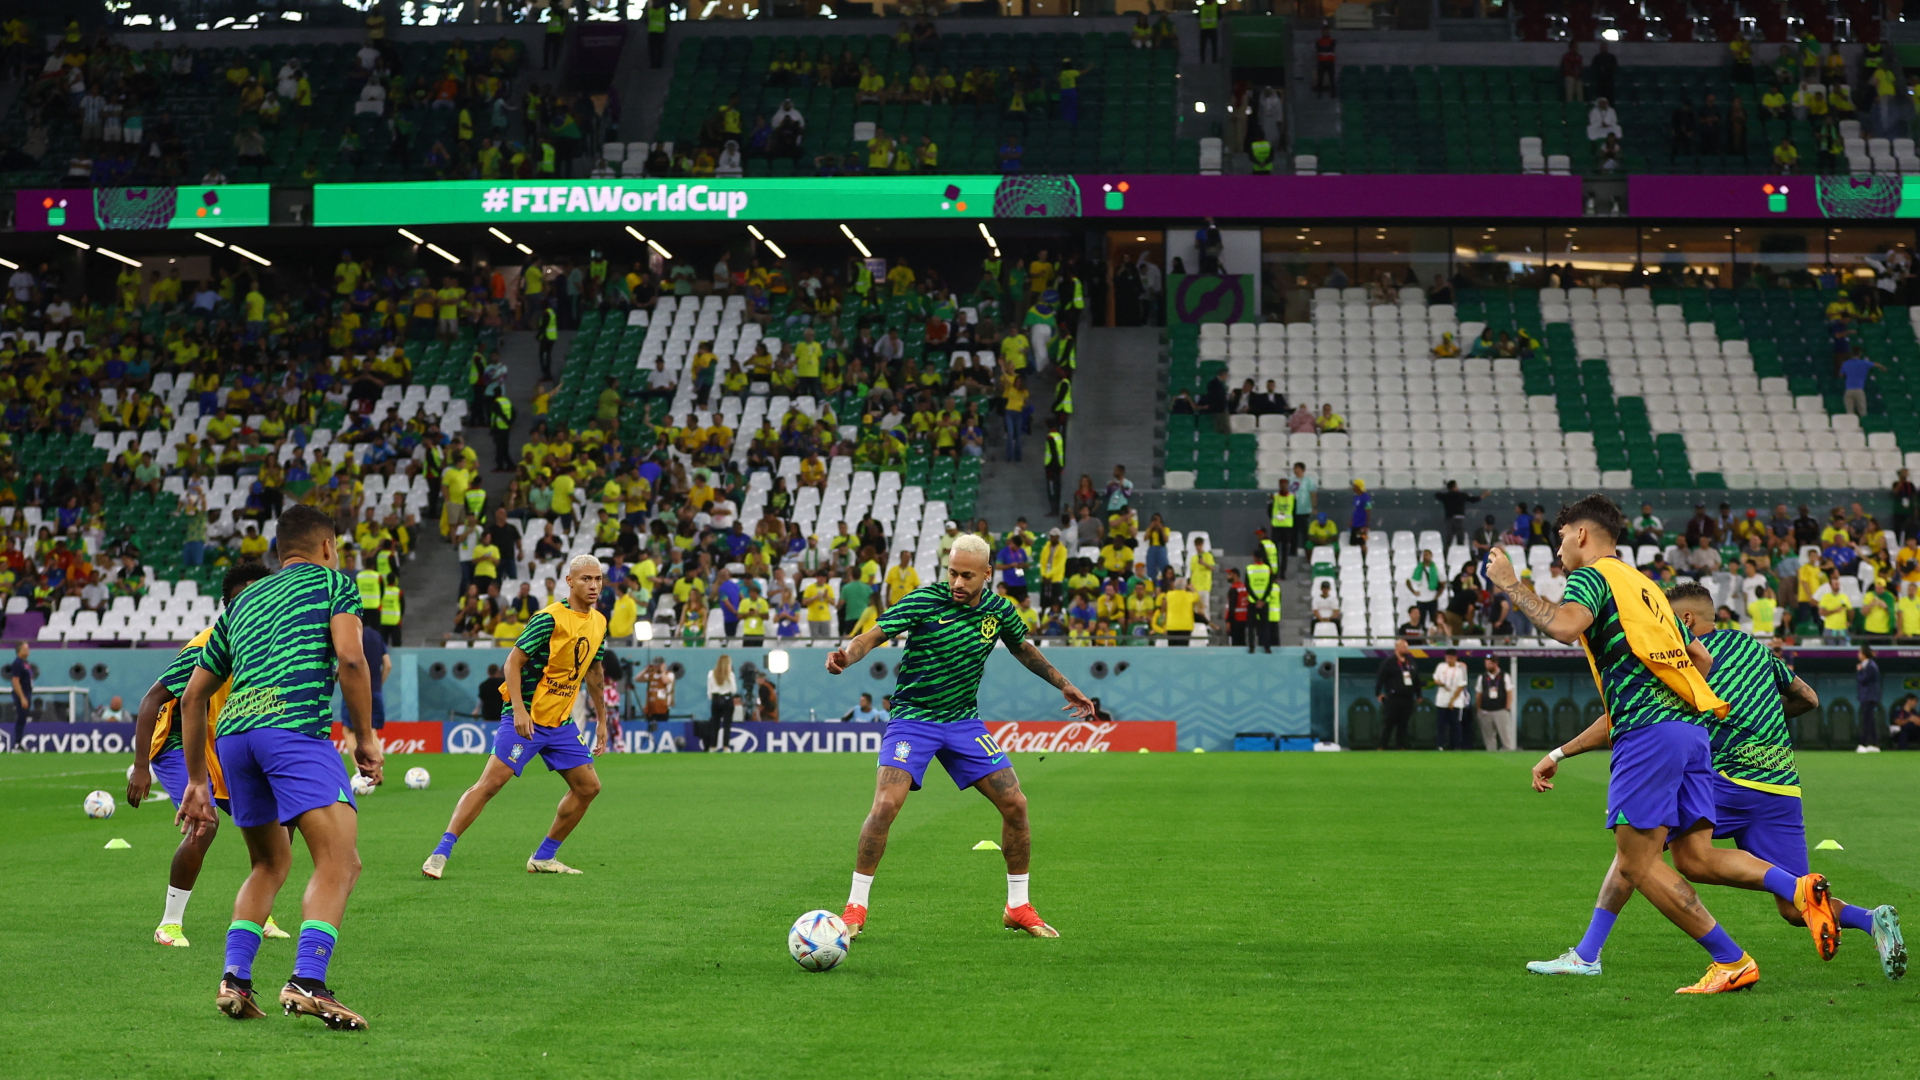 Der brasilianische Nationalspieler Neymar beim Aufwärmen vor dem Spiel | REUTERS